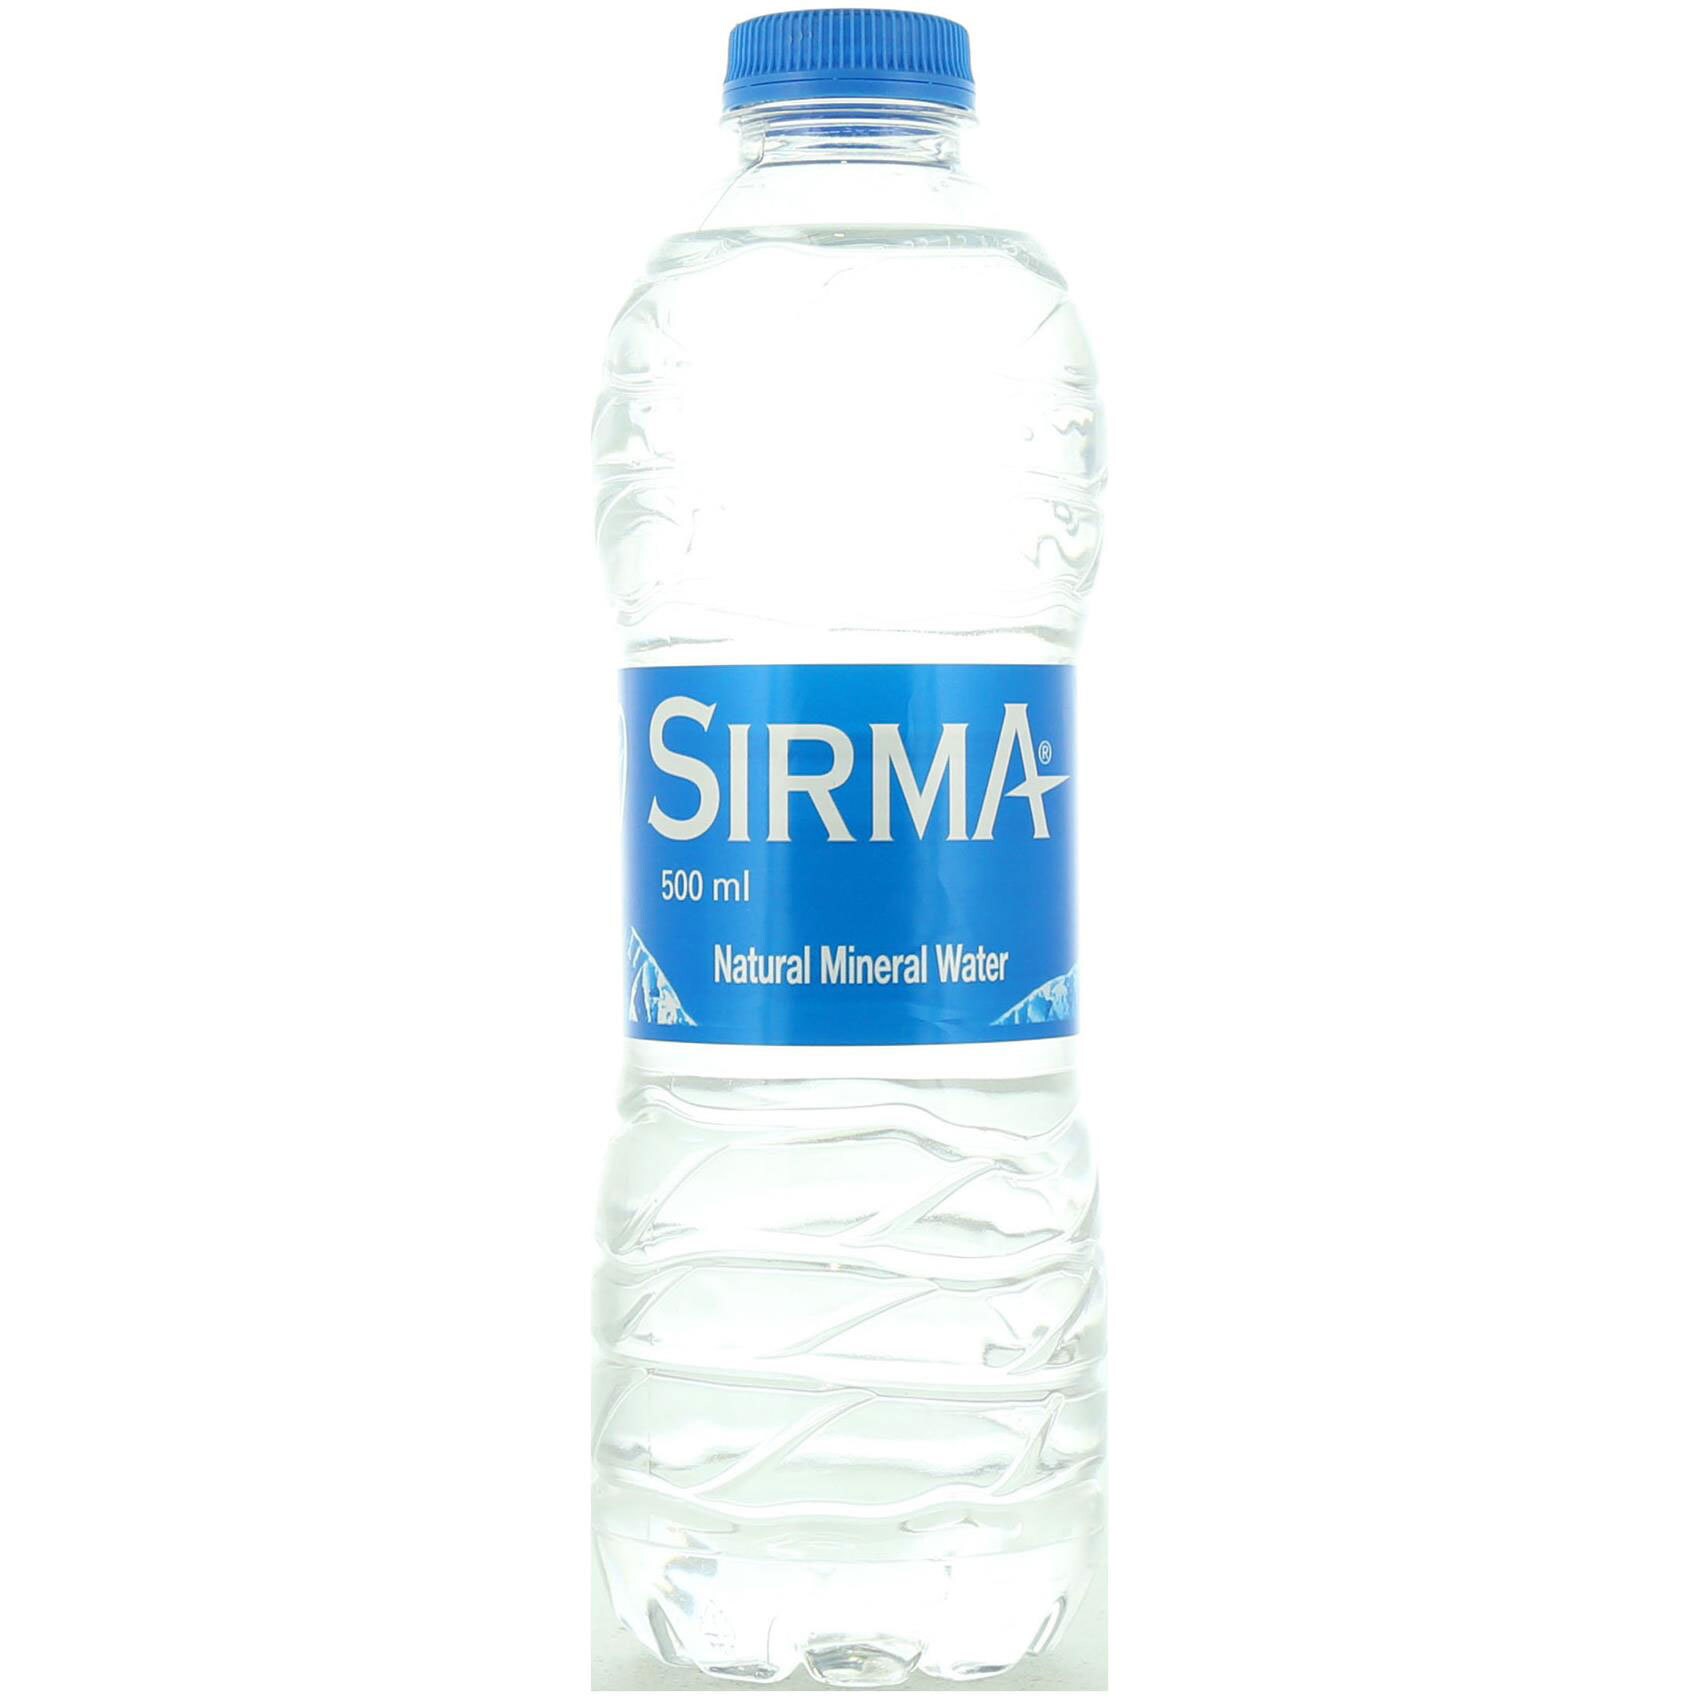 Burk med vatten från Sirma